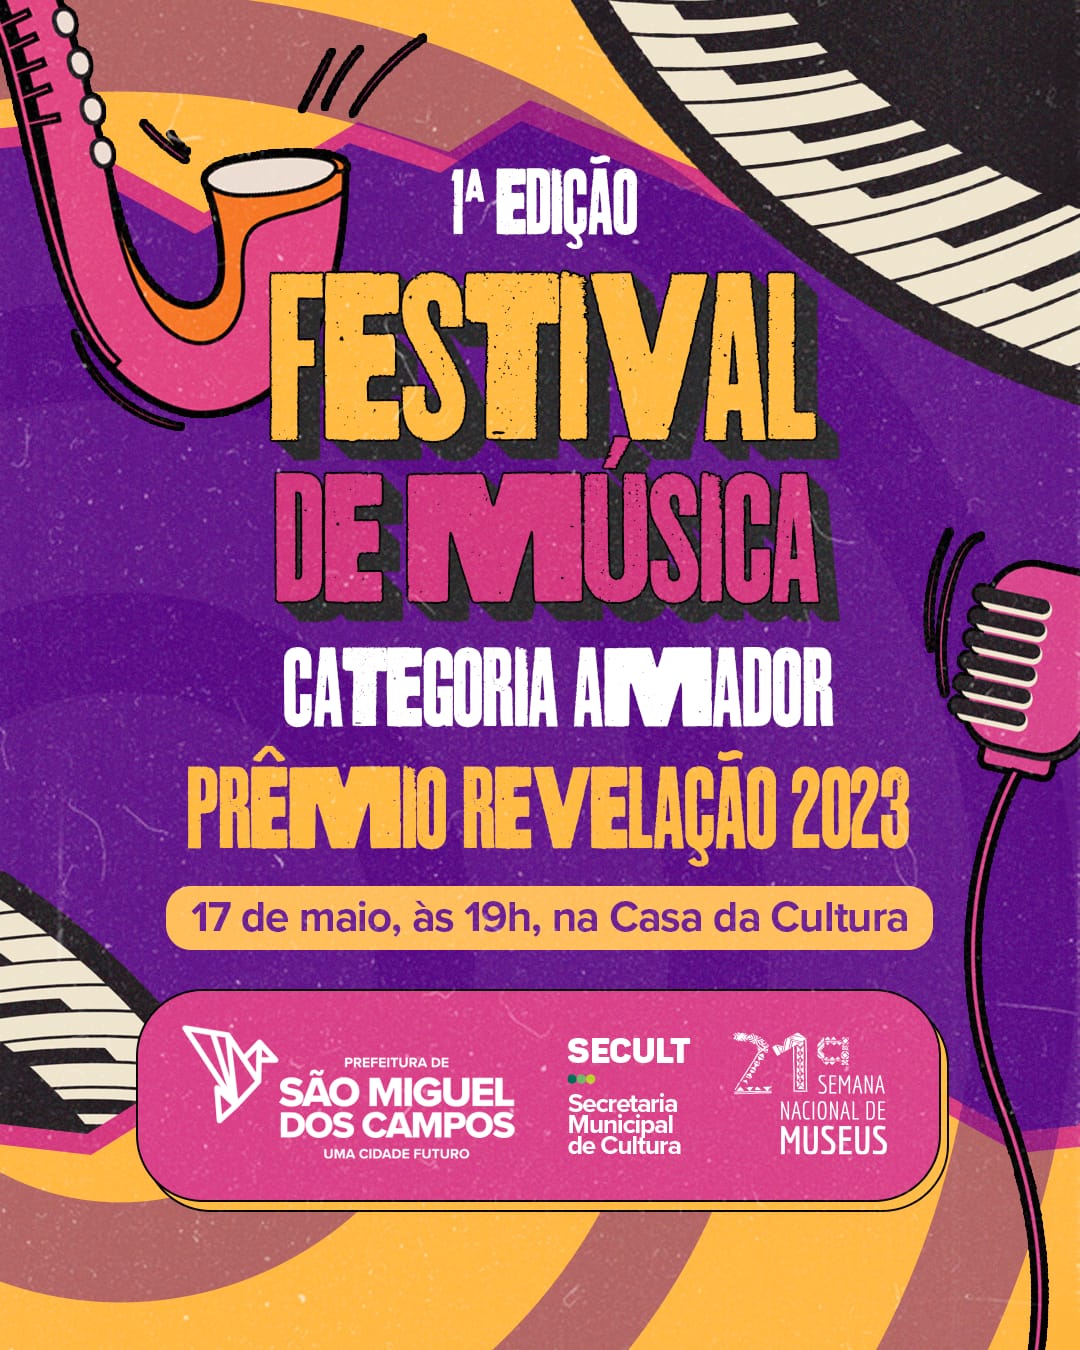 Grande Festival de Música ocorrerá amanhã (quarta-feira) na Casa da Cultura.